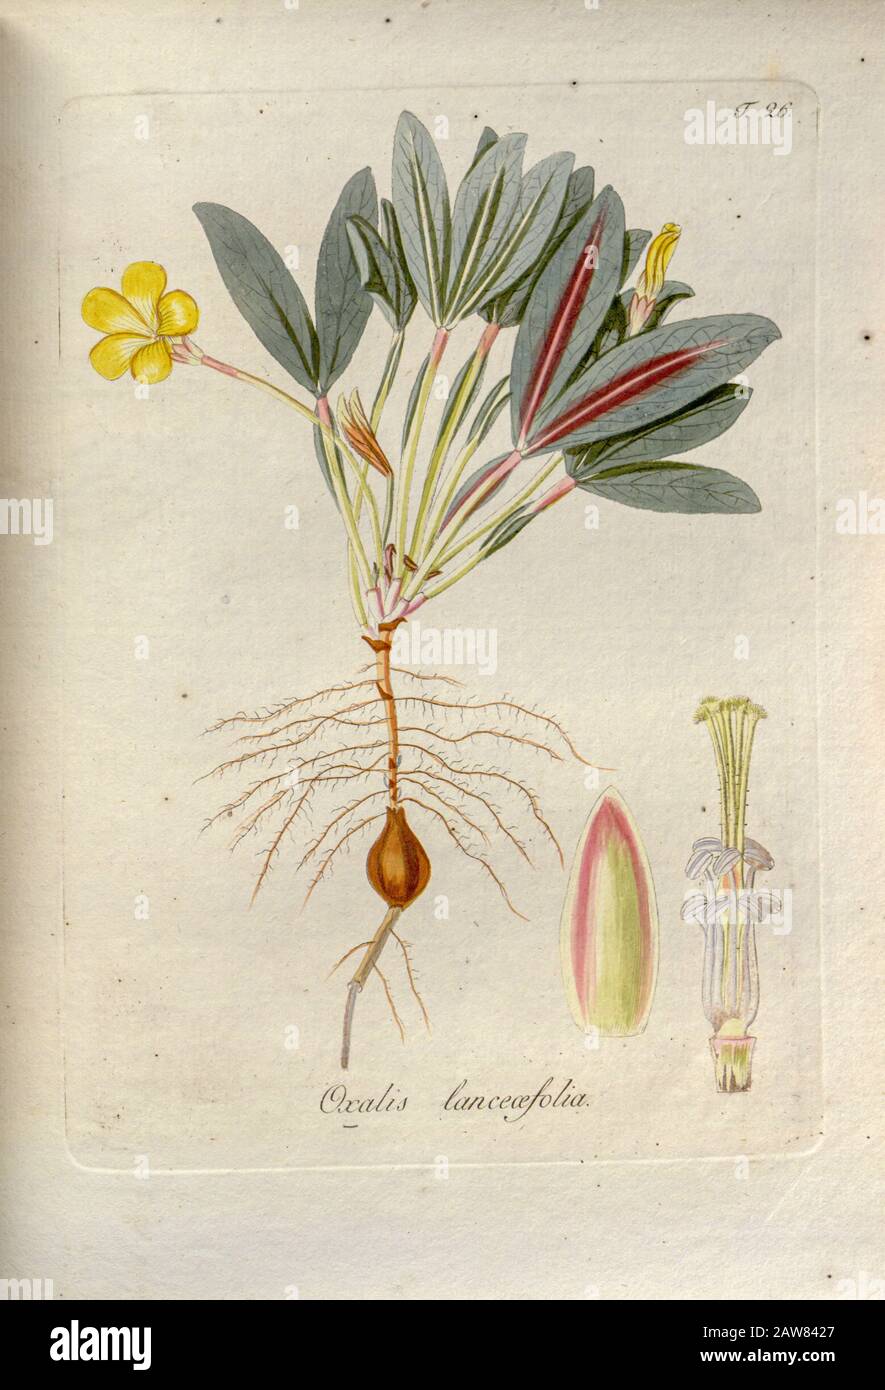 Woodsorrel (Oxalis lanceifolia). Illustration from 'Oxalis Monographia iconibus illustrata' by Nikolaus Joseph Jacquin (1797-1798). published 1794 Stock Photo